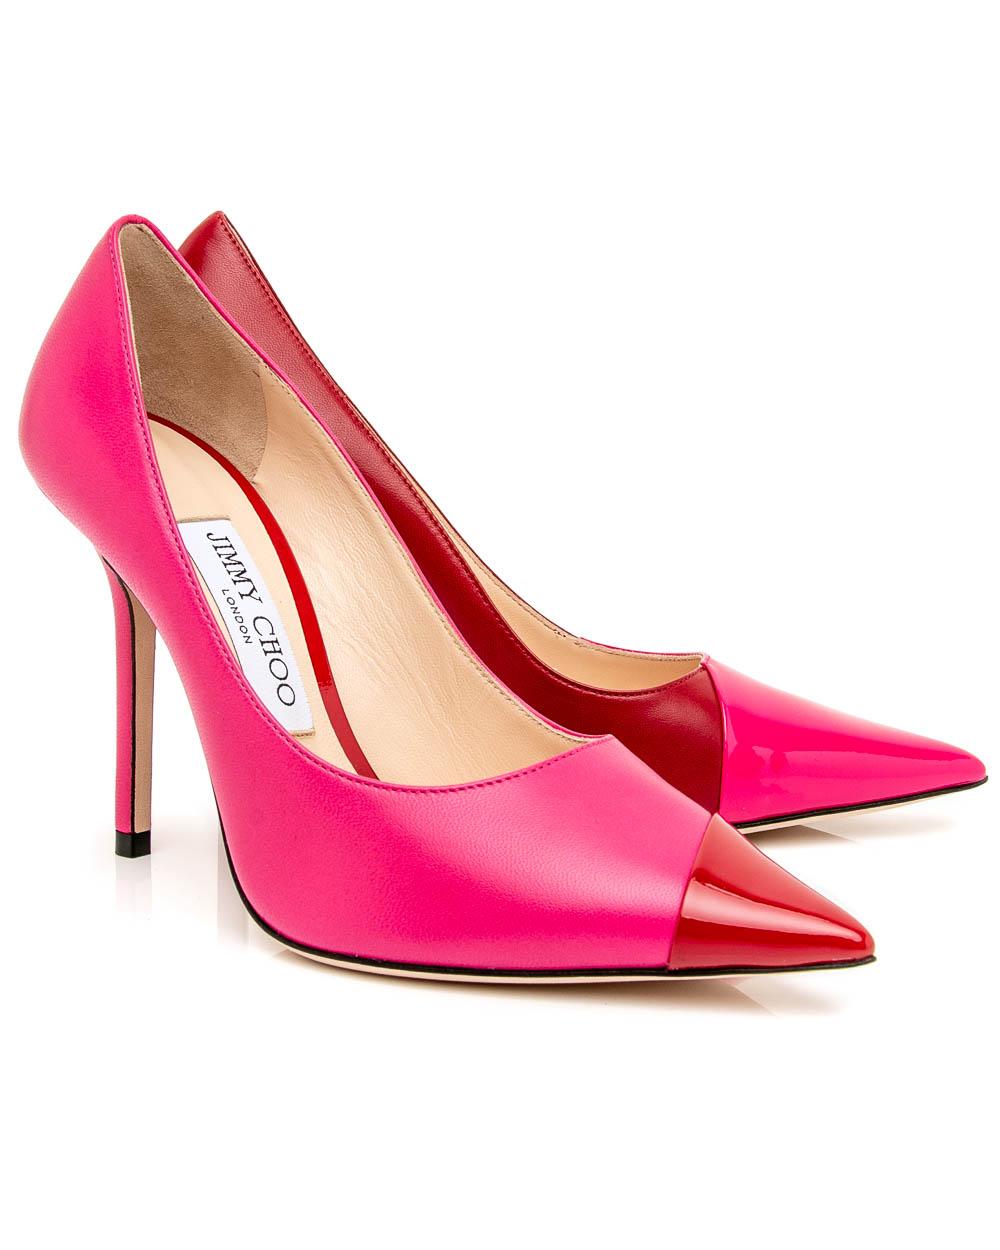 jimmy choo heels pink